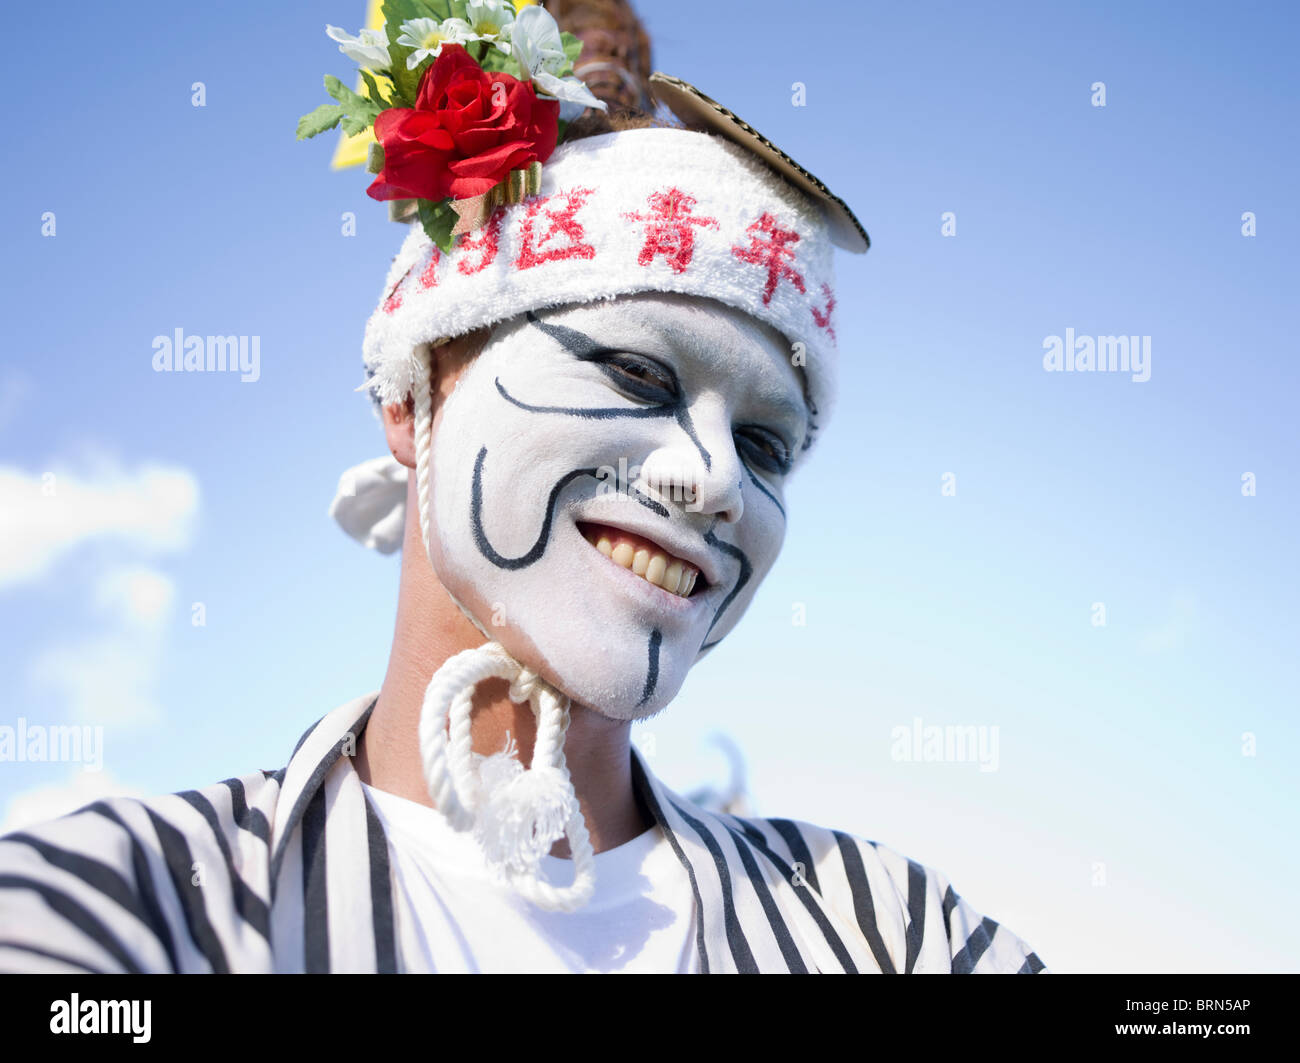 Festival de danse traditionnelle de l'Eisa, Okinawa, Japon Banque D'Images